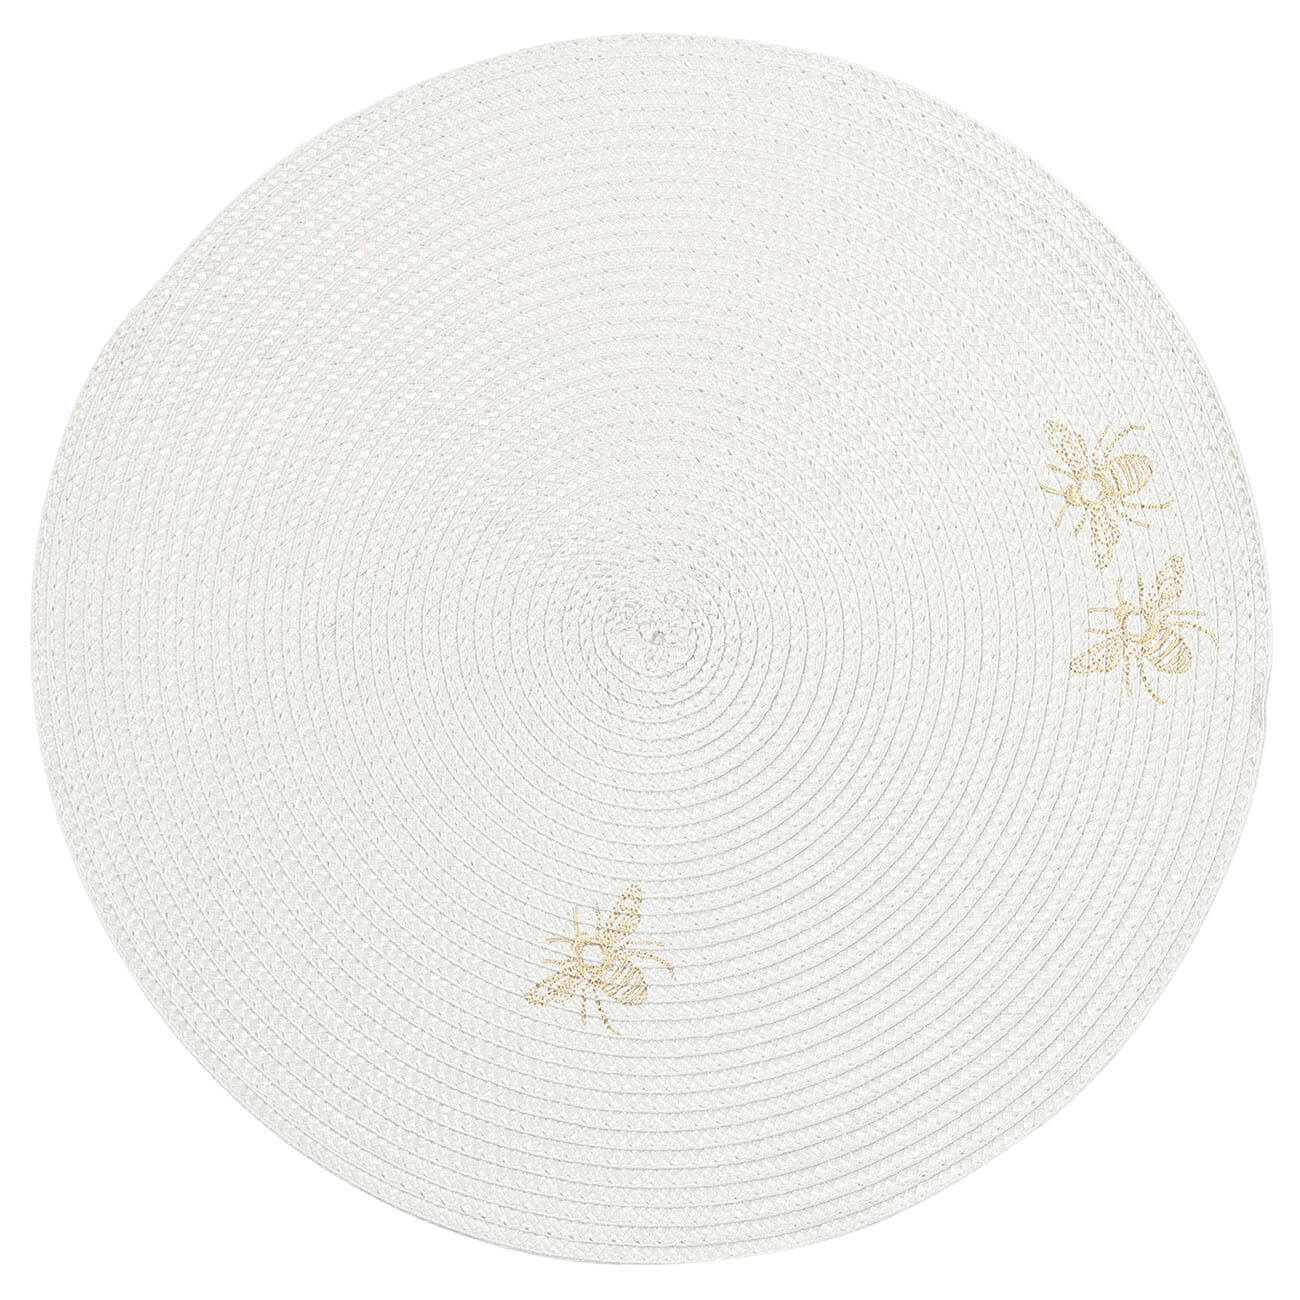 Салфетка под приборы, 38 см, полипропилен/ПЭТ, круглая, светло-серая, Пчелы, Circle embroidery салфетка подстановочная harman 48х33 см серая